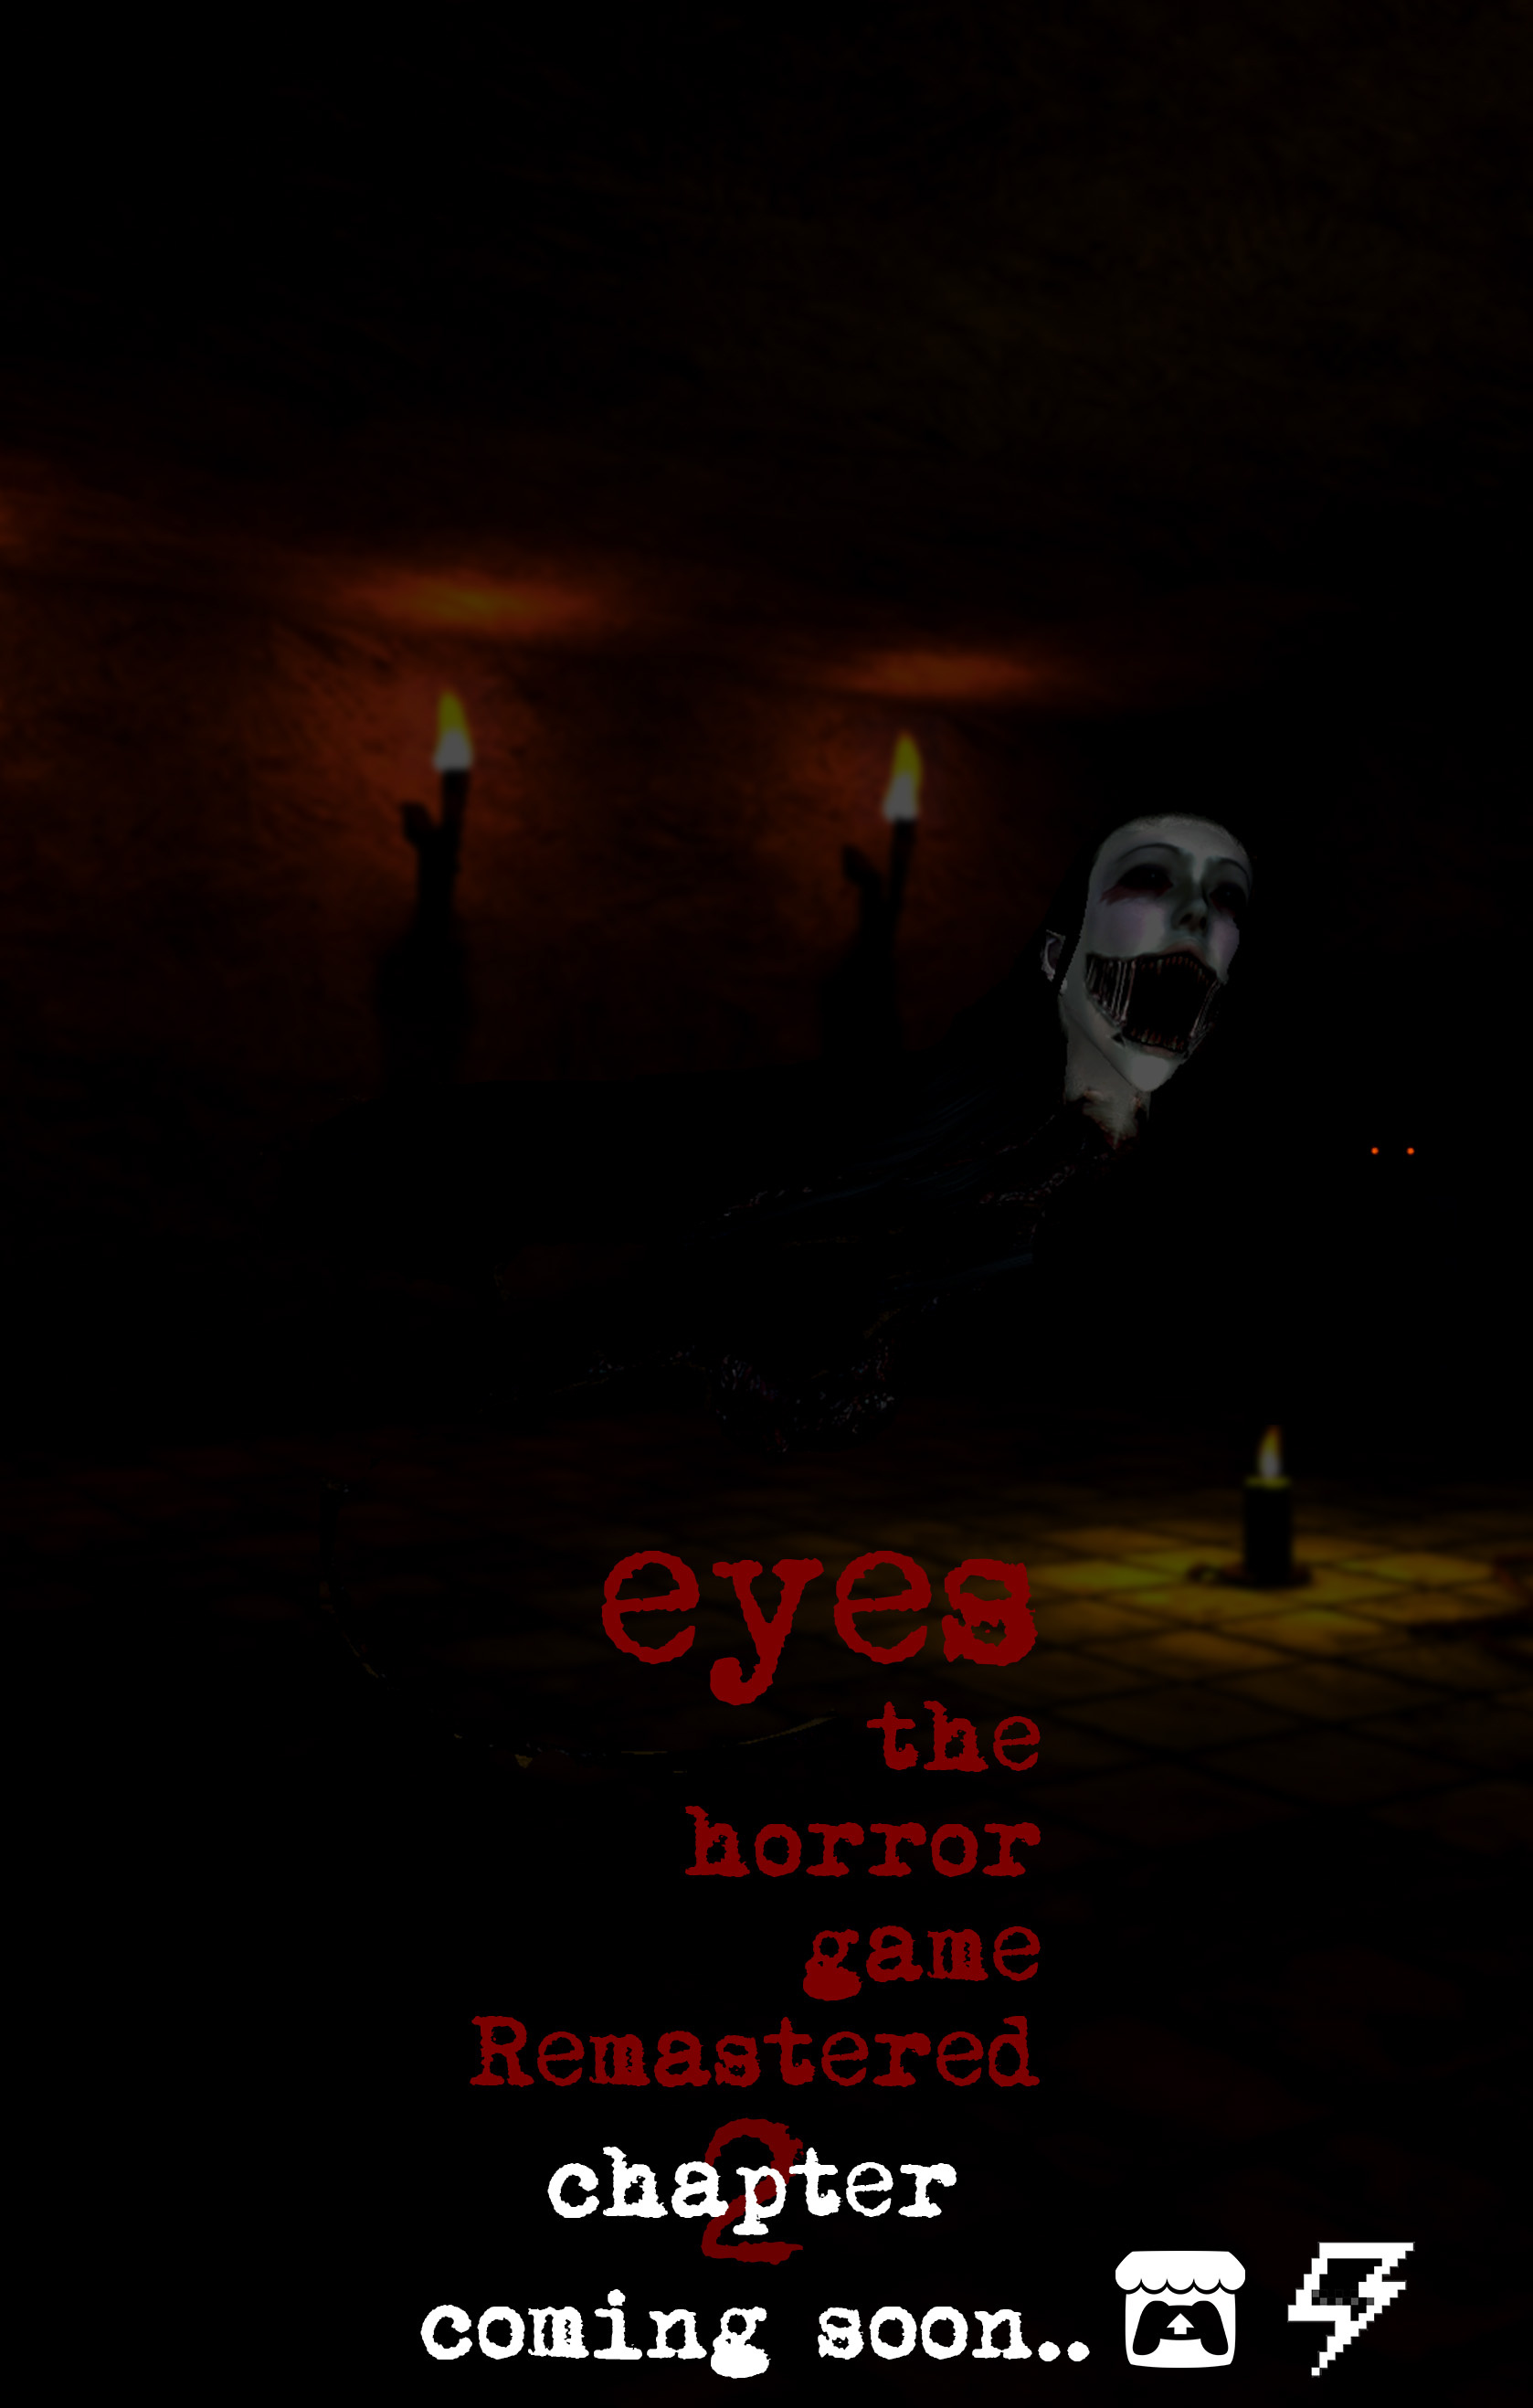 Eyes - the horror game 1.0.8 by AleksandrShagabutdinov - Game Jolt